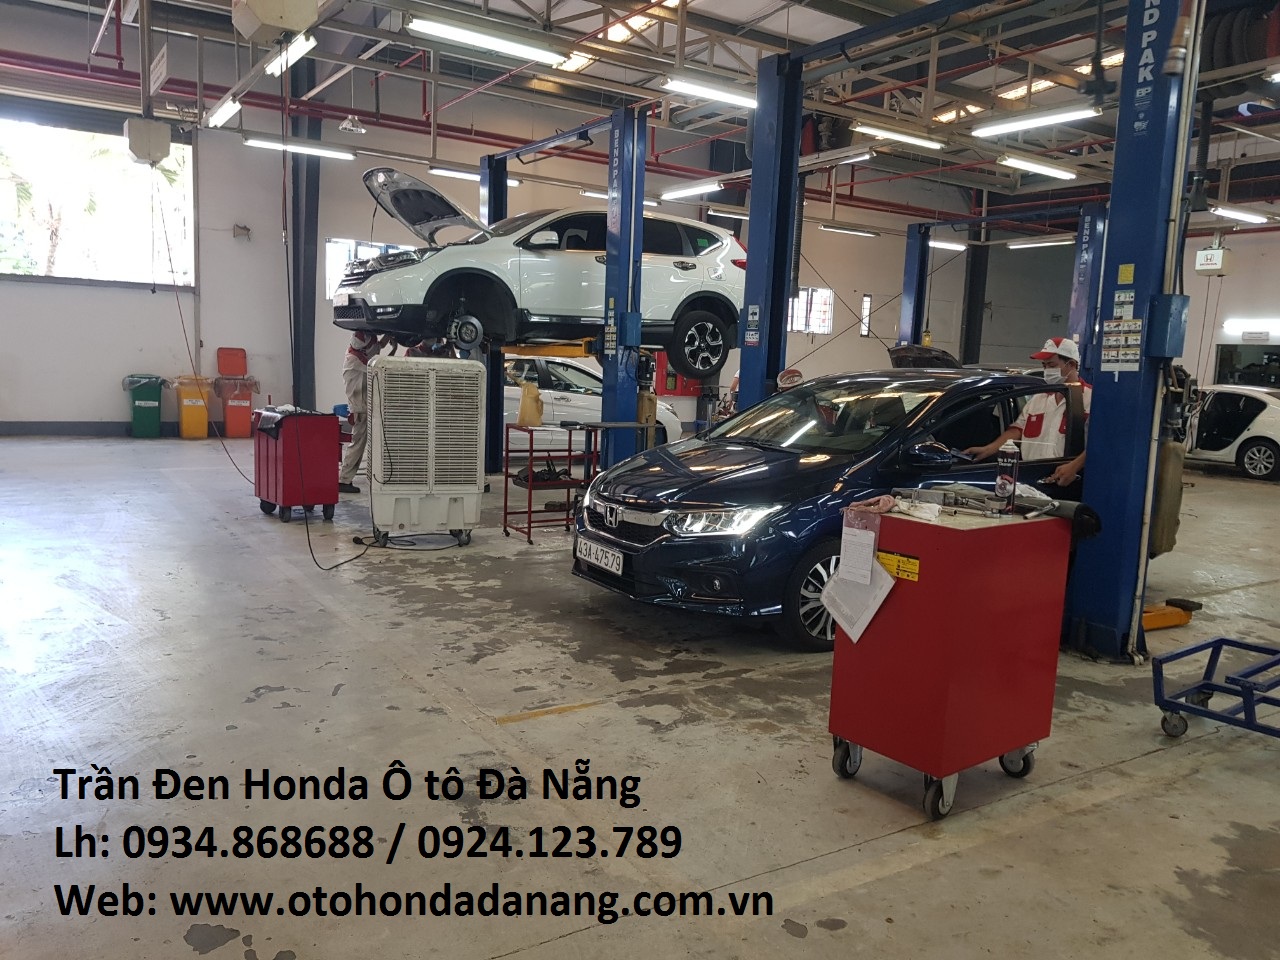 Honda Oto Da Nang